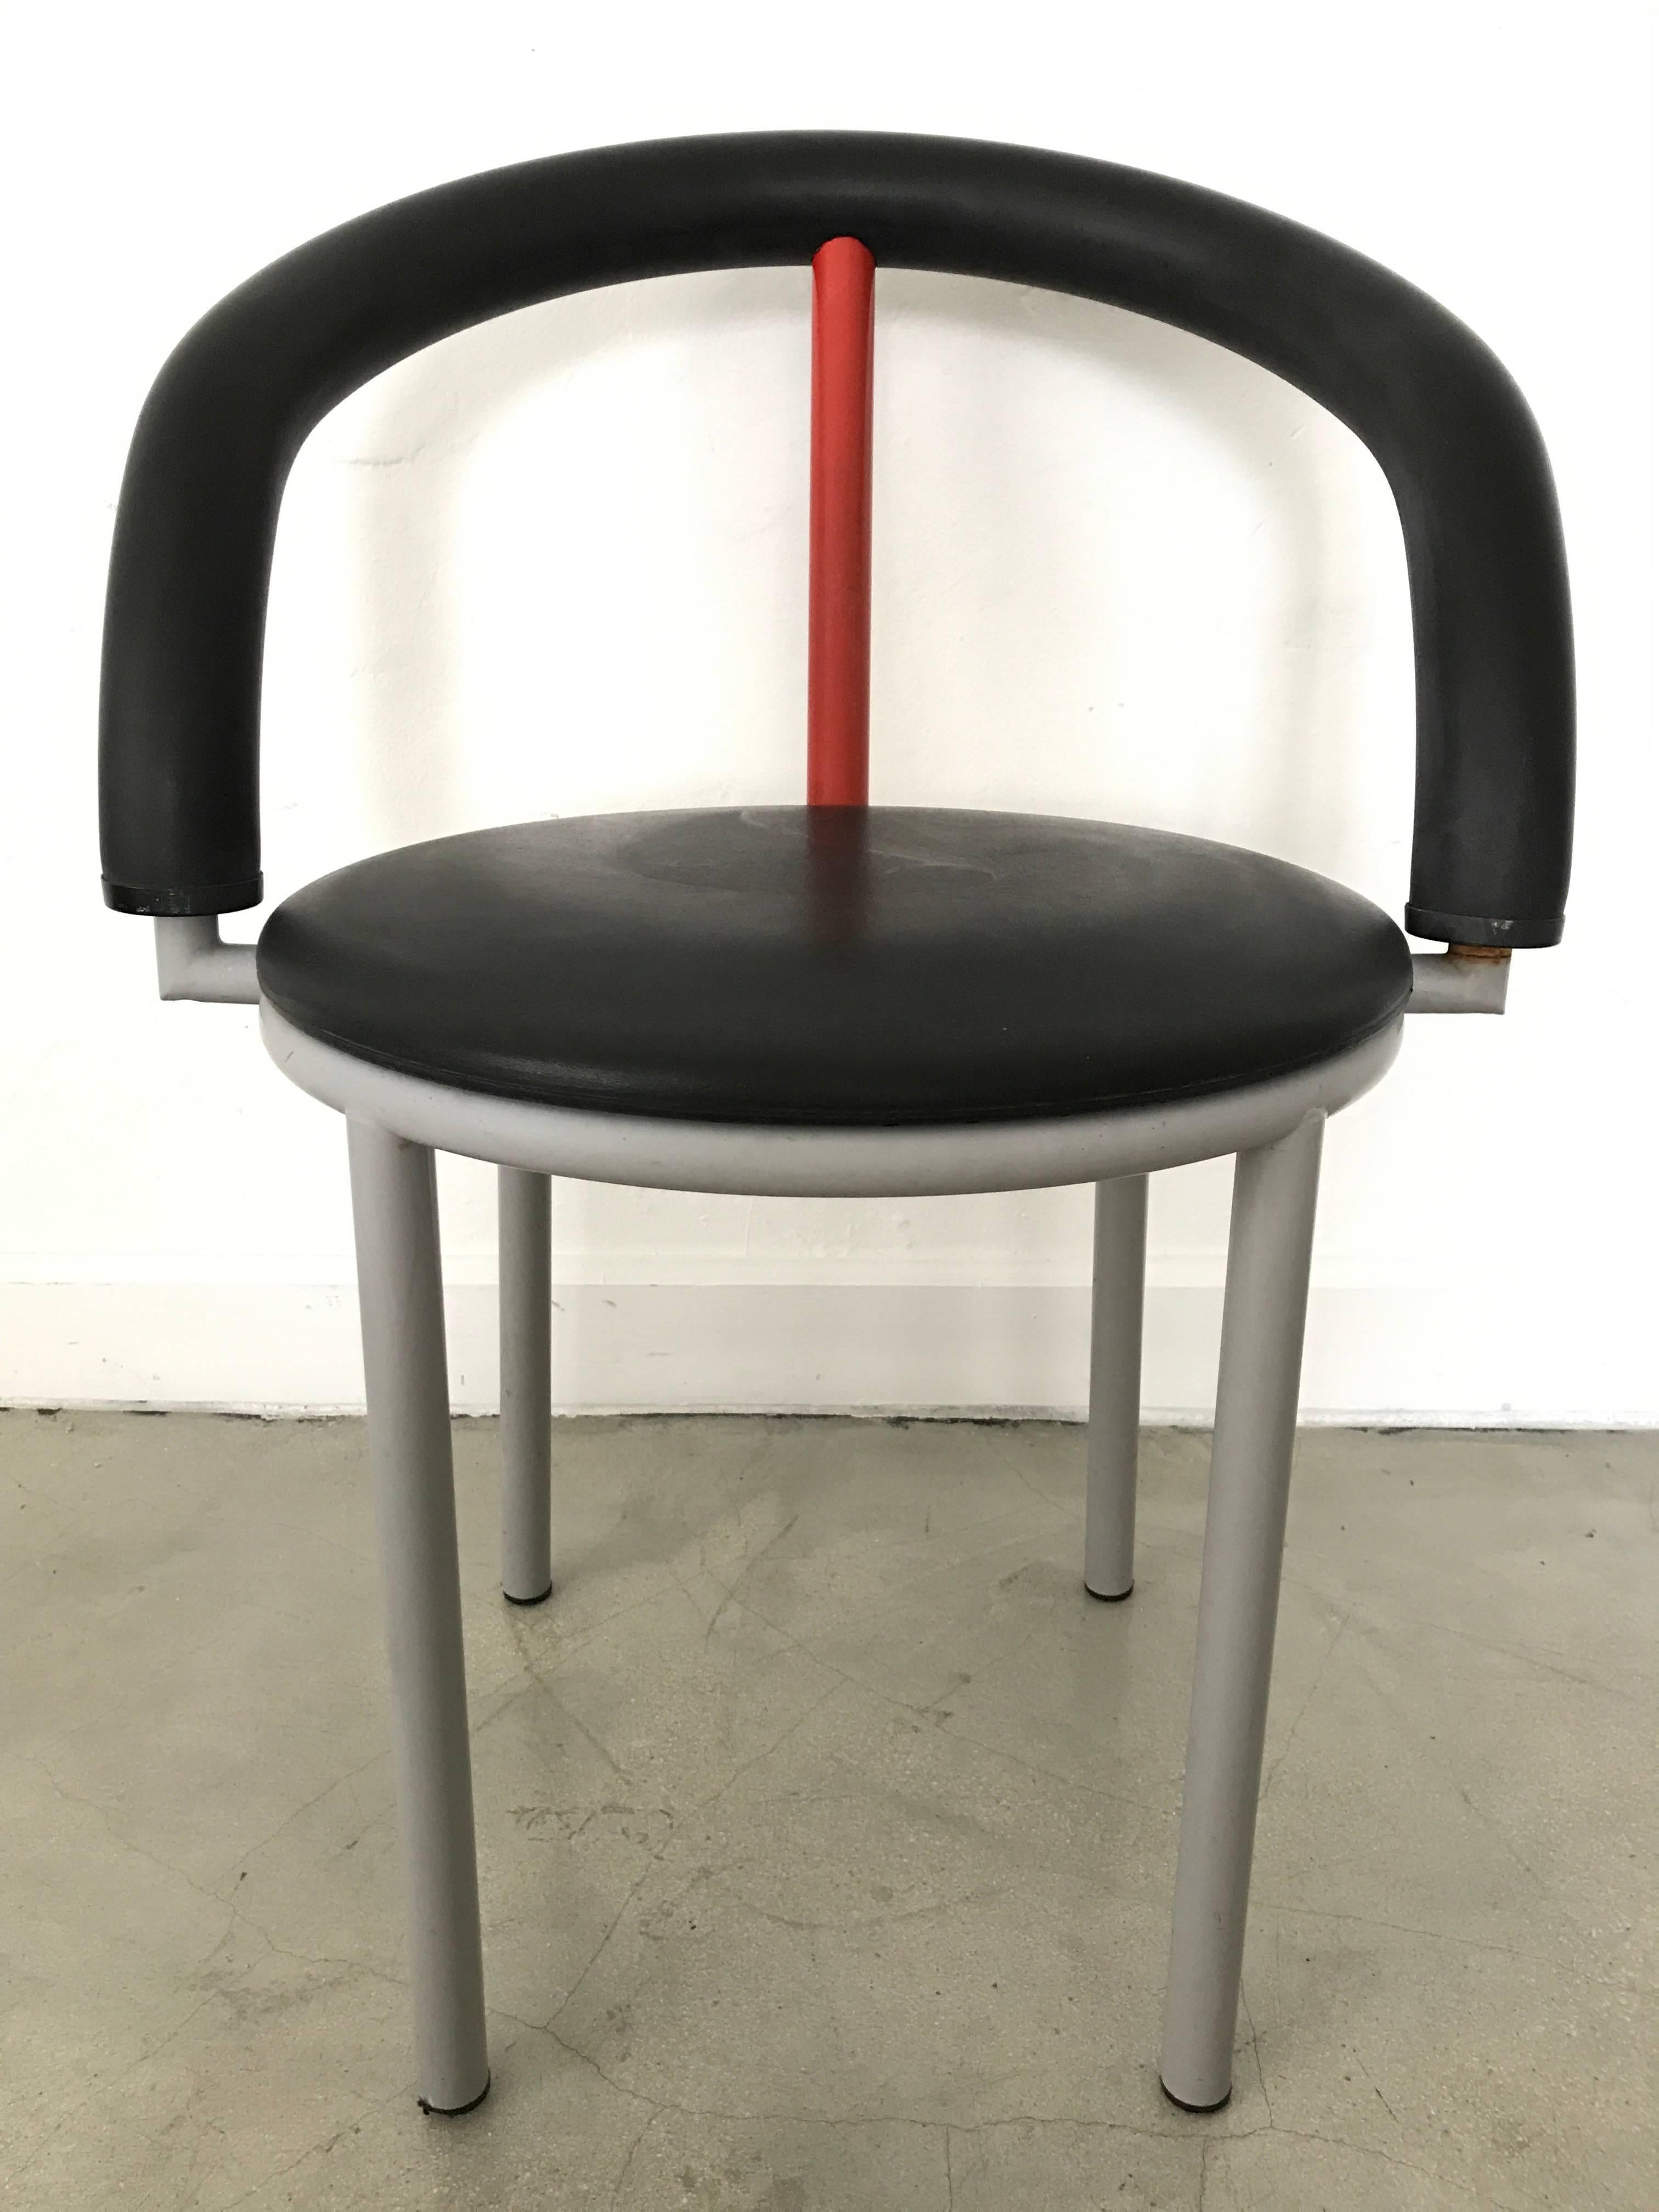 Postmoderne Stühle mit grauem Stahlgestell, schwarzer Gummirückenlehne und schwarzem Kissen von Anna Anselmi für Bieffeplast, 1985.